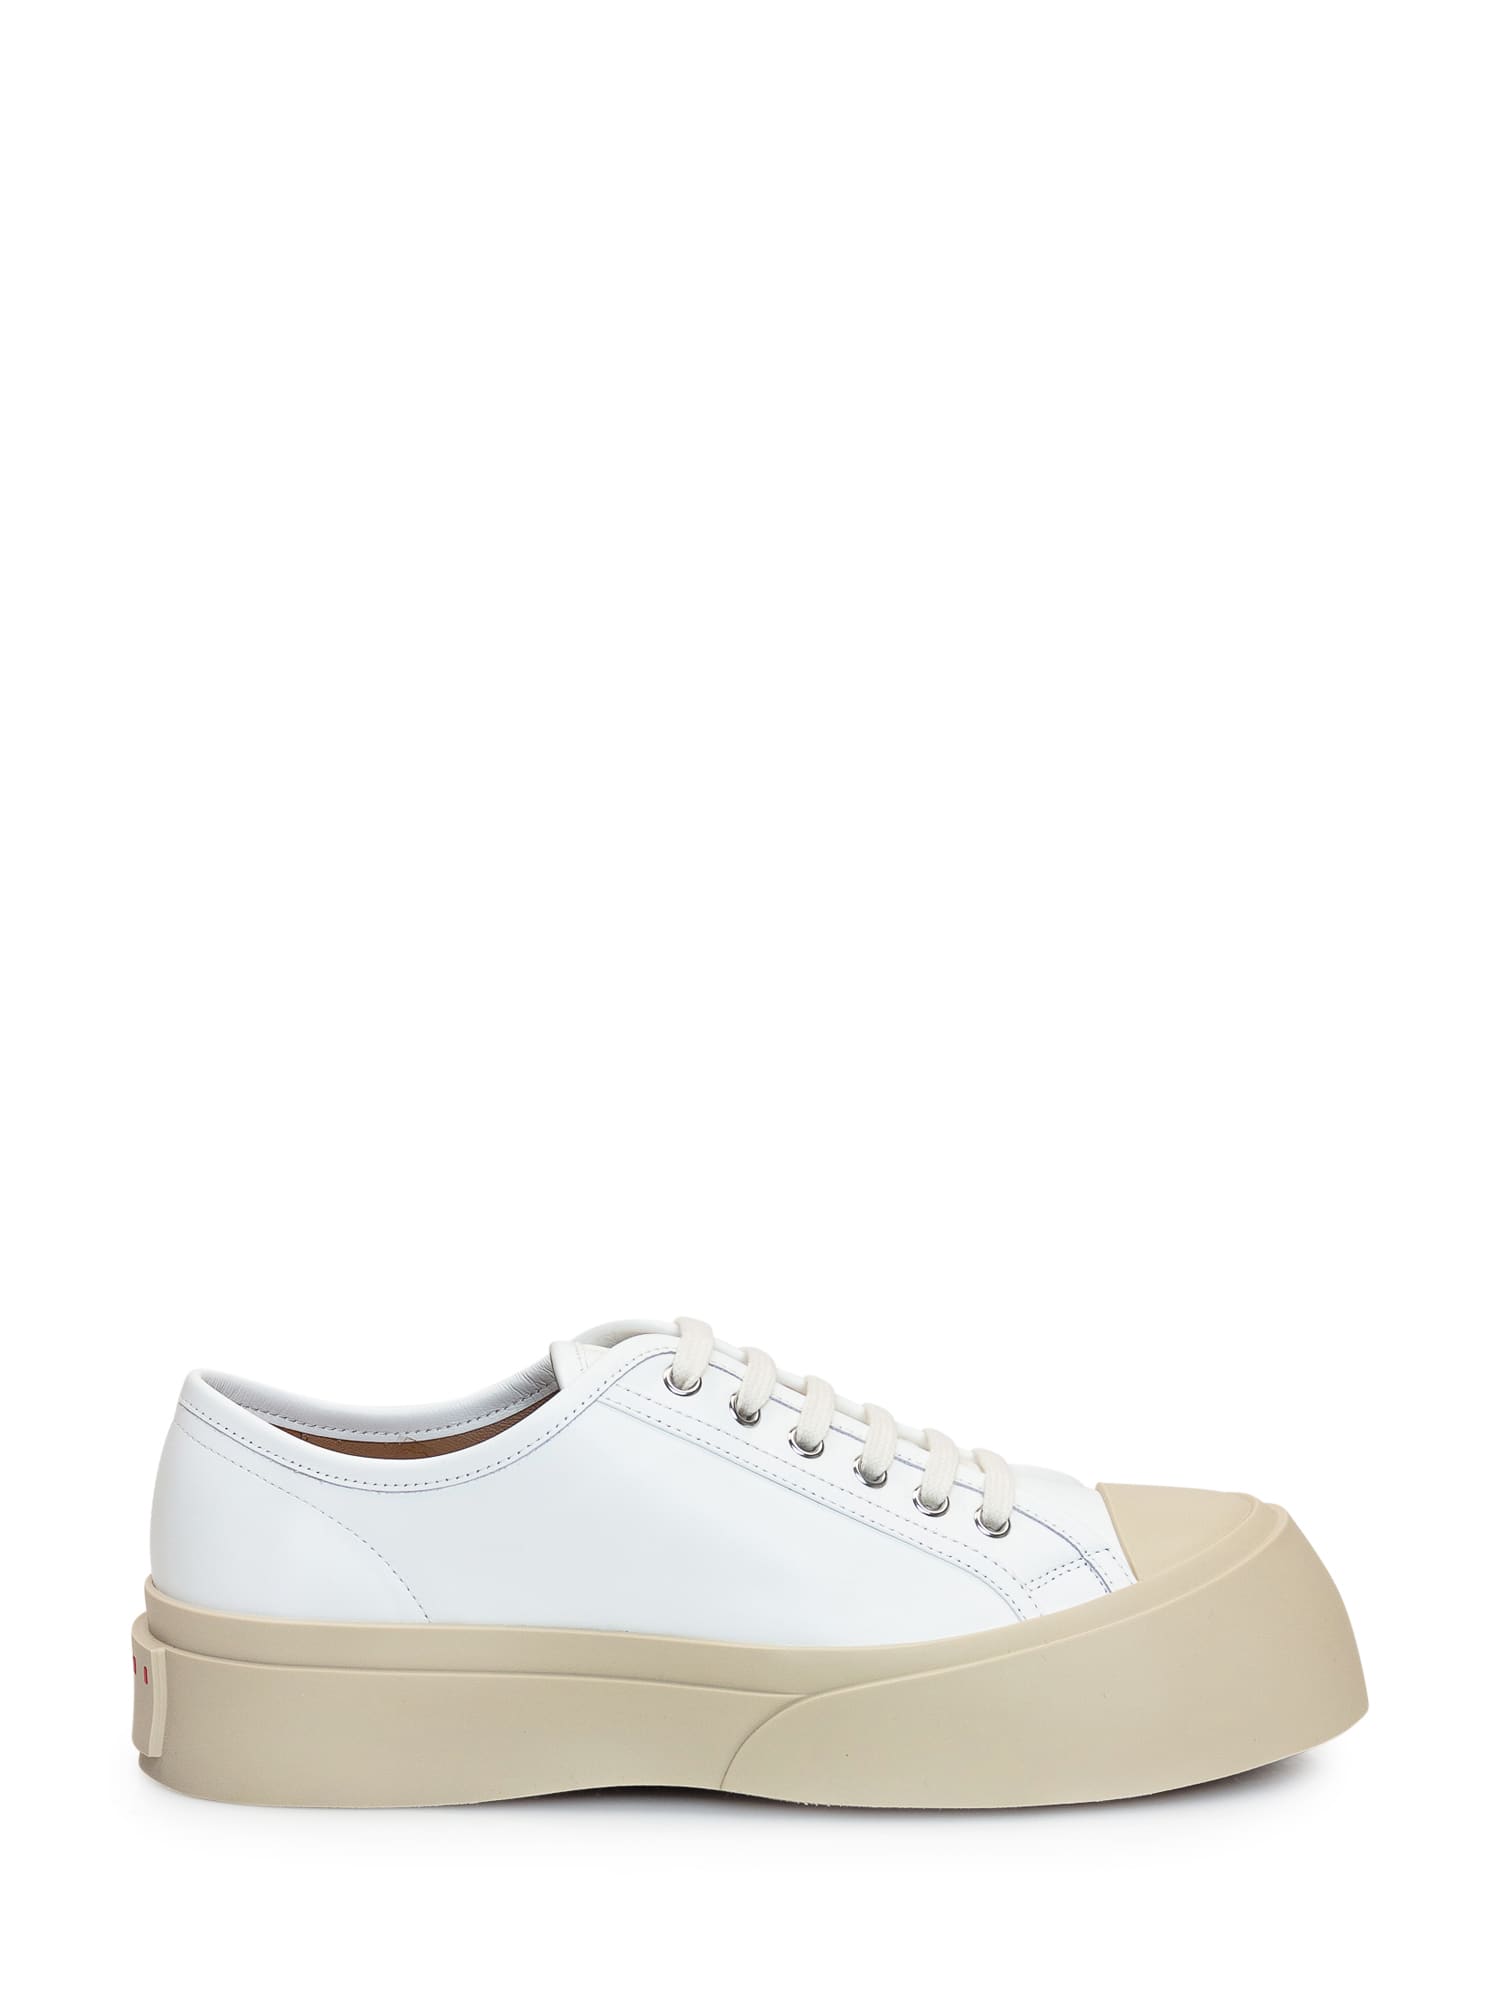 Marni Pablo Sneaker In White